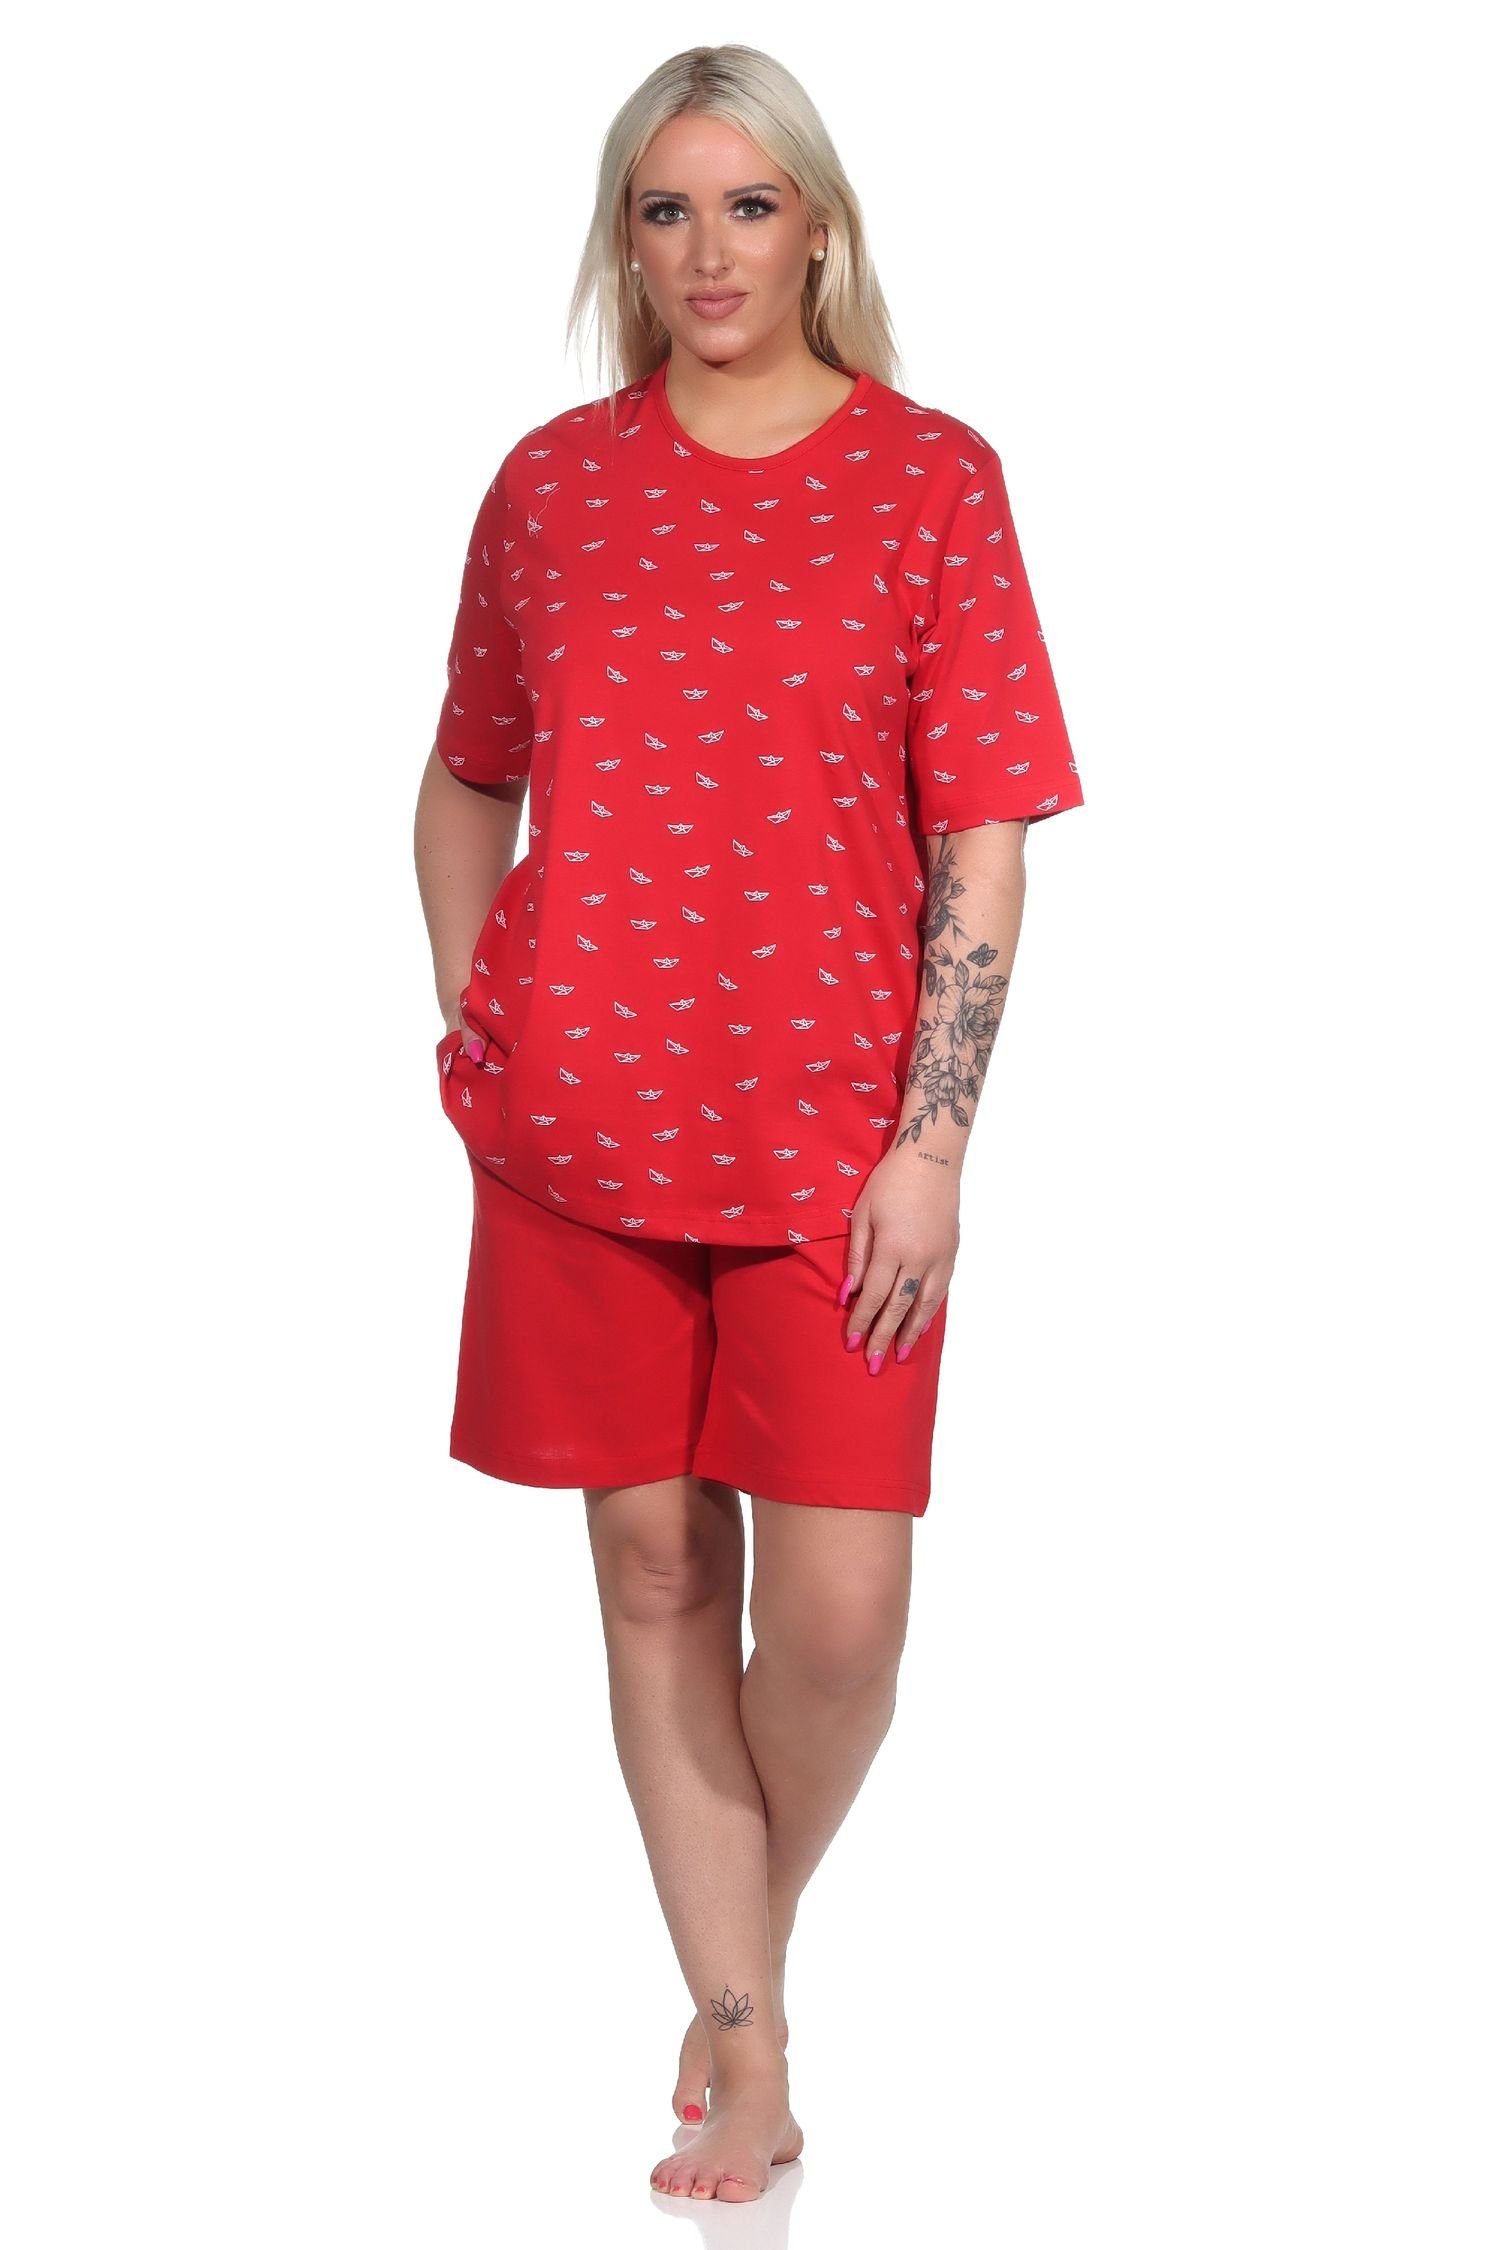 kurzarm Pyjama Normann in Damen Pyjama Schlafanzug Shorty Optik rot maritimer